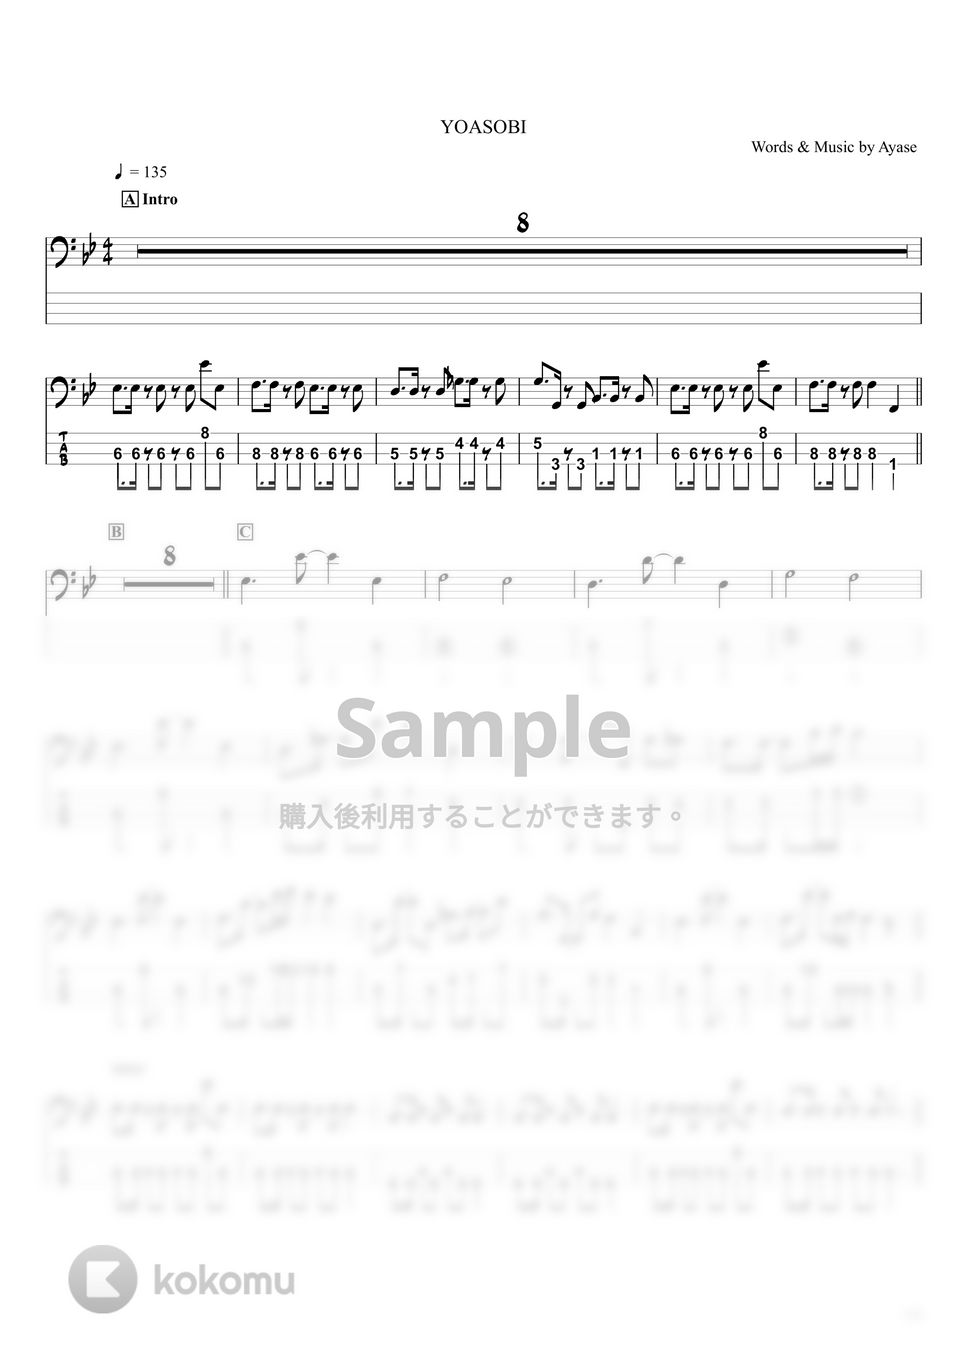 YOASOBI - 群青 (『ベースTAB譜』☆4弦ベース対応) by swbass